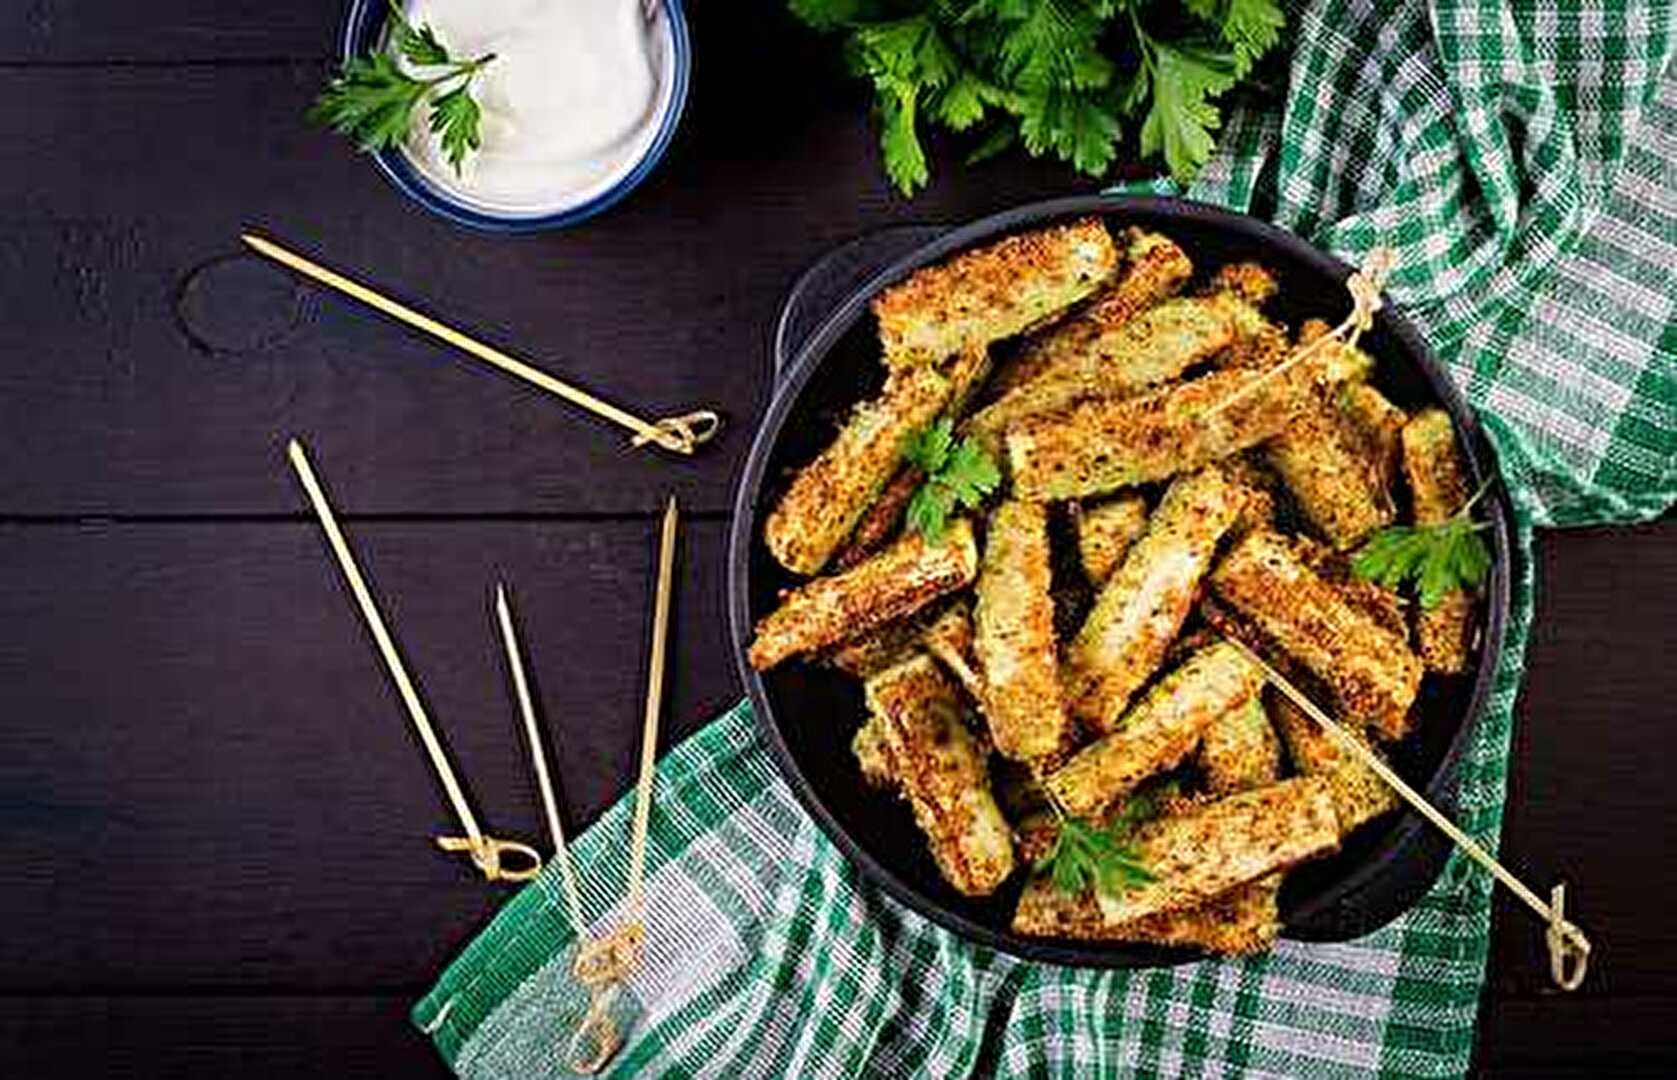 Bâtonnets de courgettes croustillants au parmesan : l'apéritif gourmand et facile à réaliser